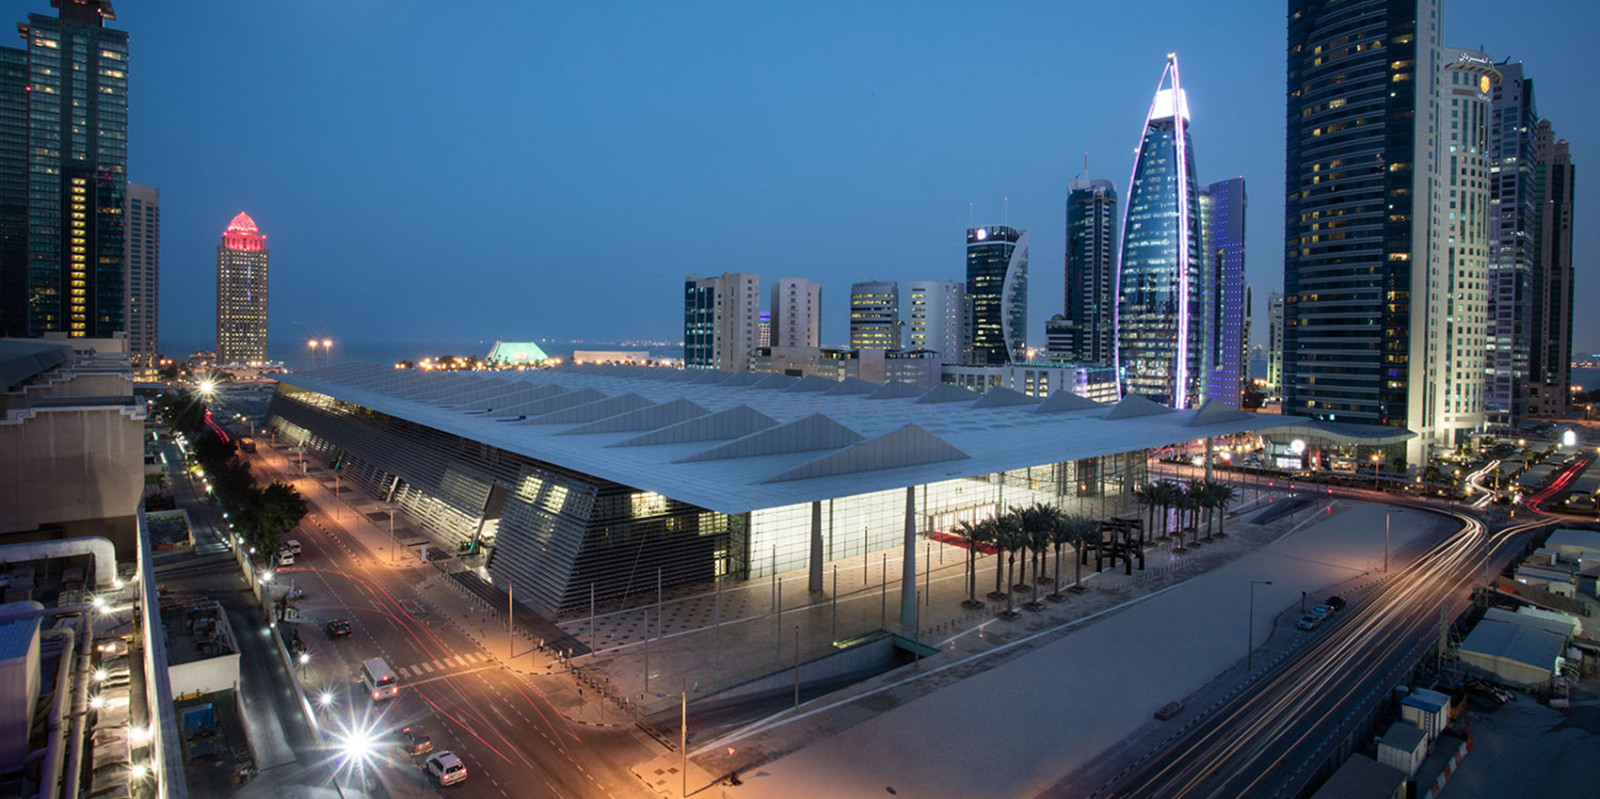 多哈会展中心 Doha Exhibition and Convention Centre1.jpg